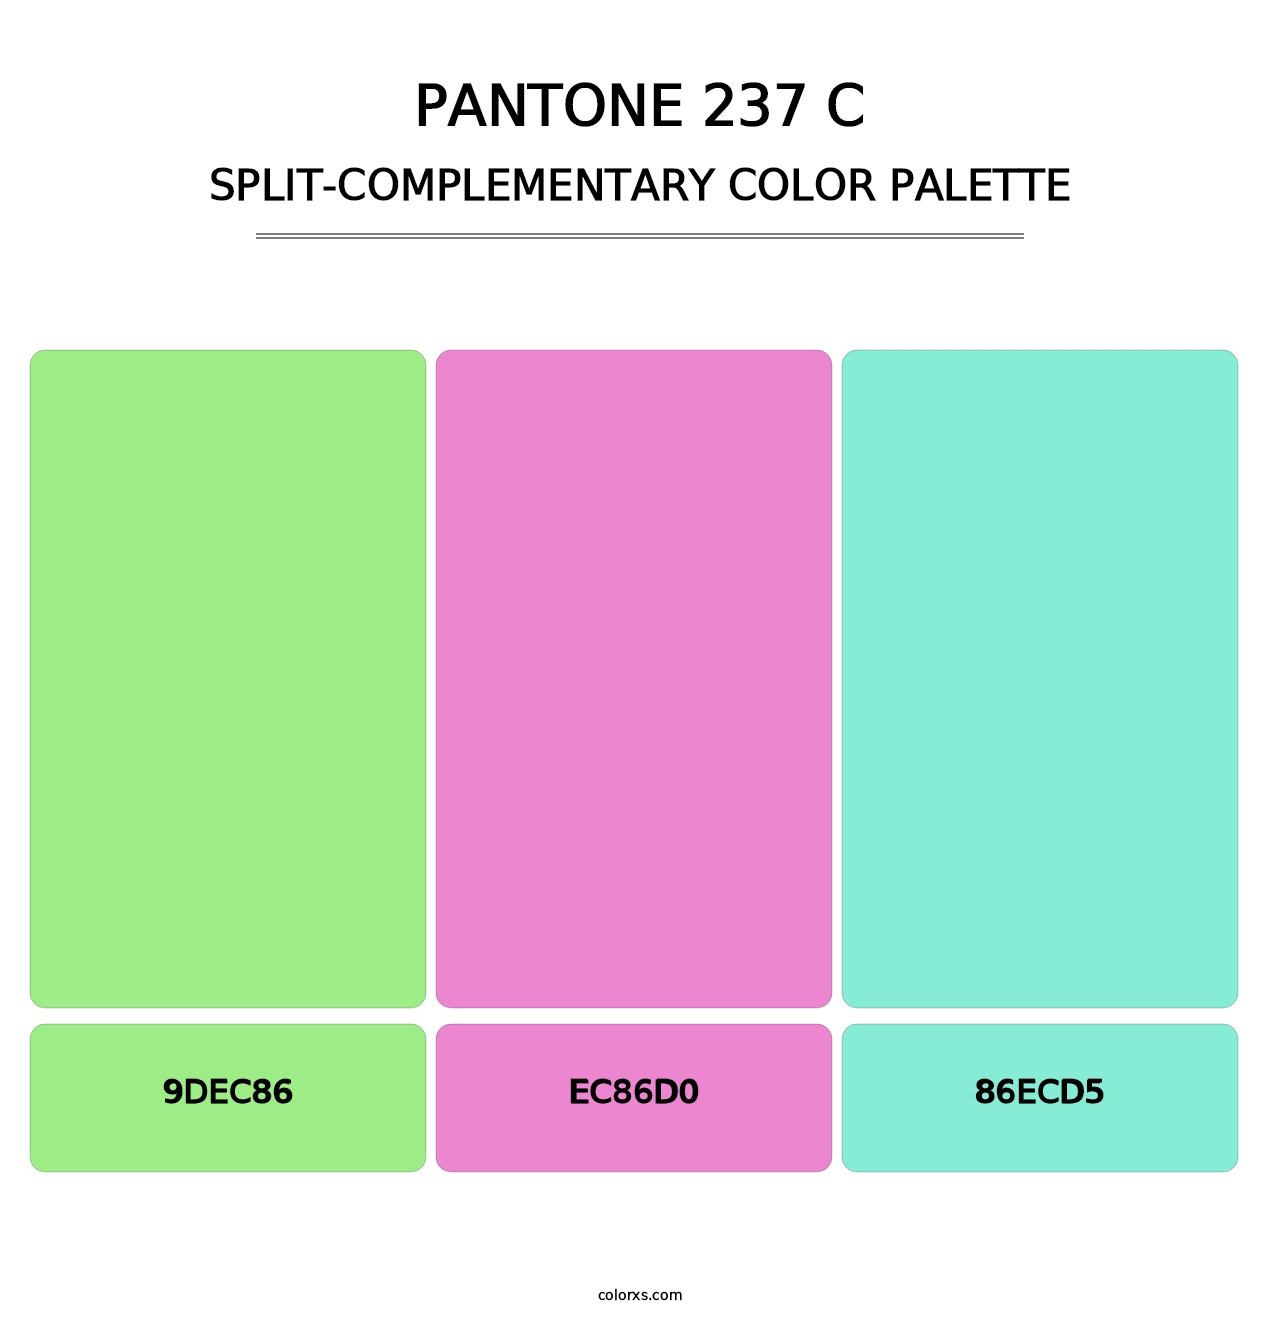 PANTONE 237 C - Split-Complementary Color Palette